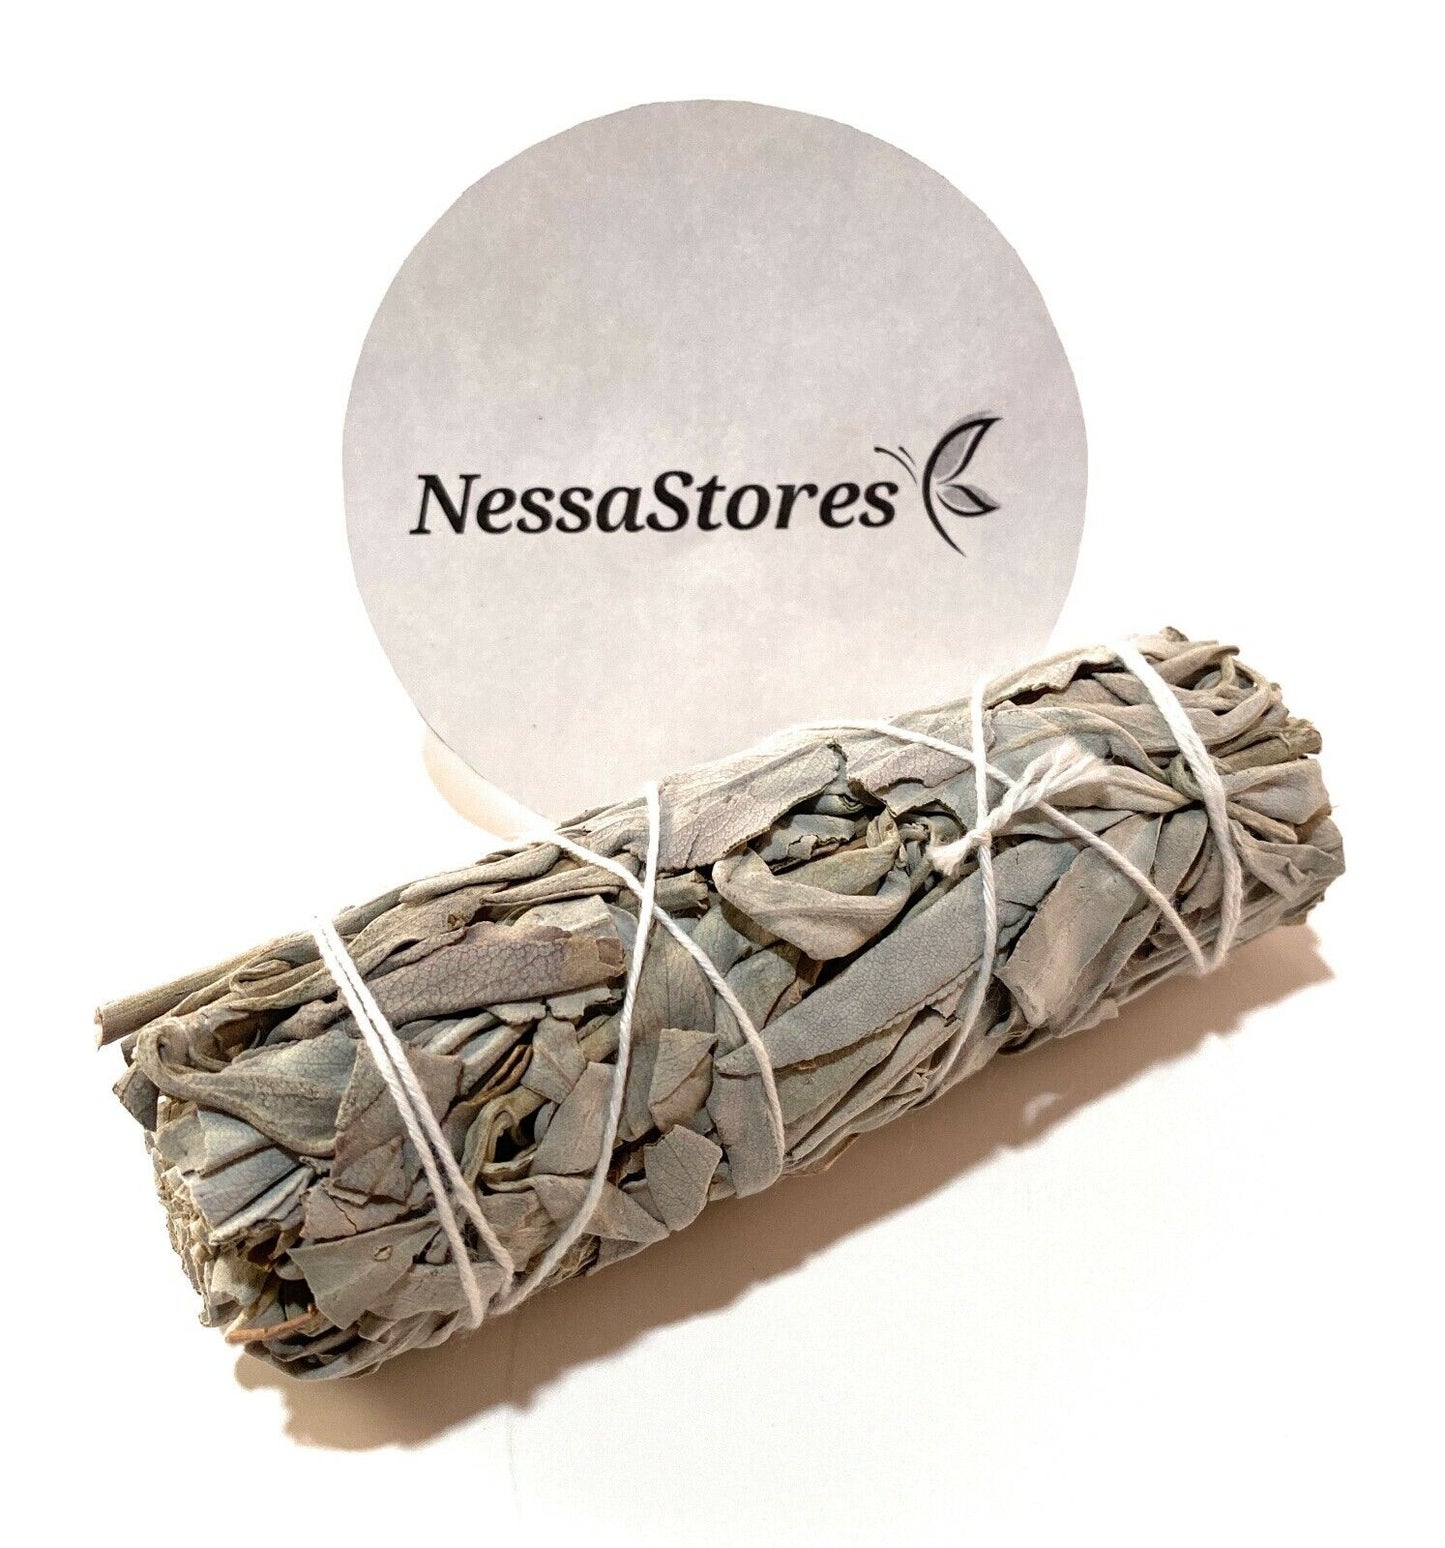 NessaStores White Sage Smudge Incense 4" Bundle (20 pcs) #JC-006